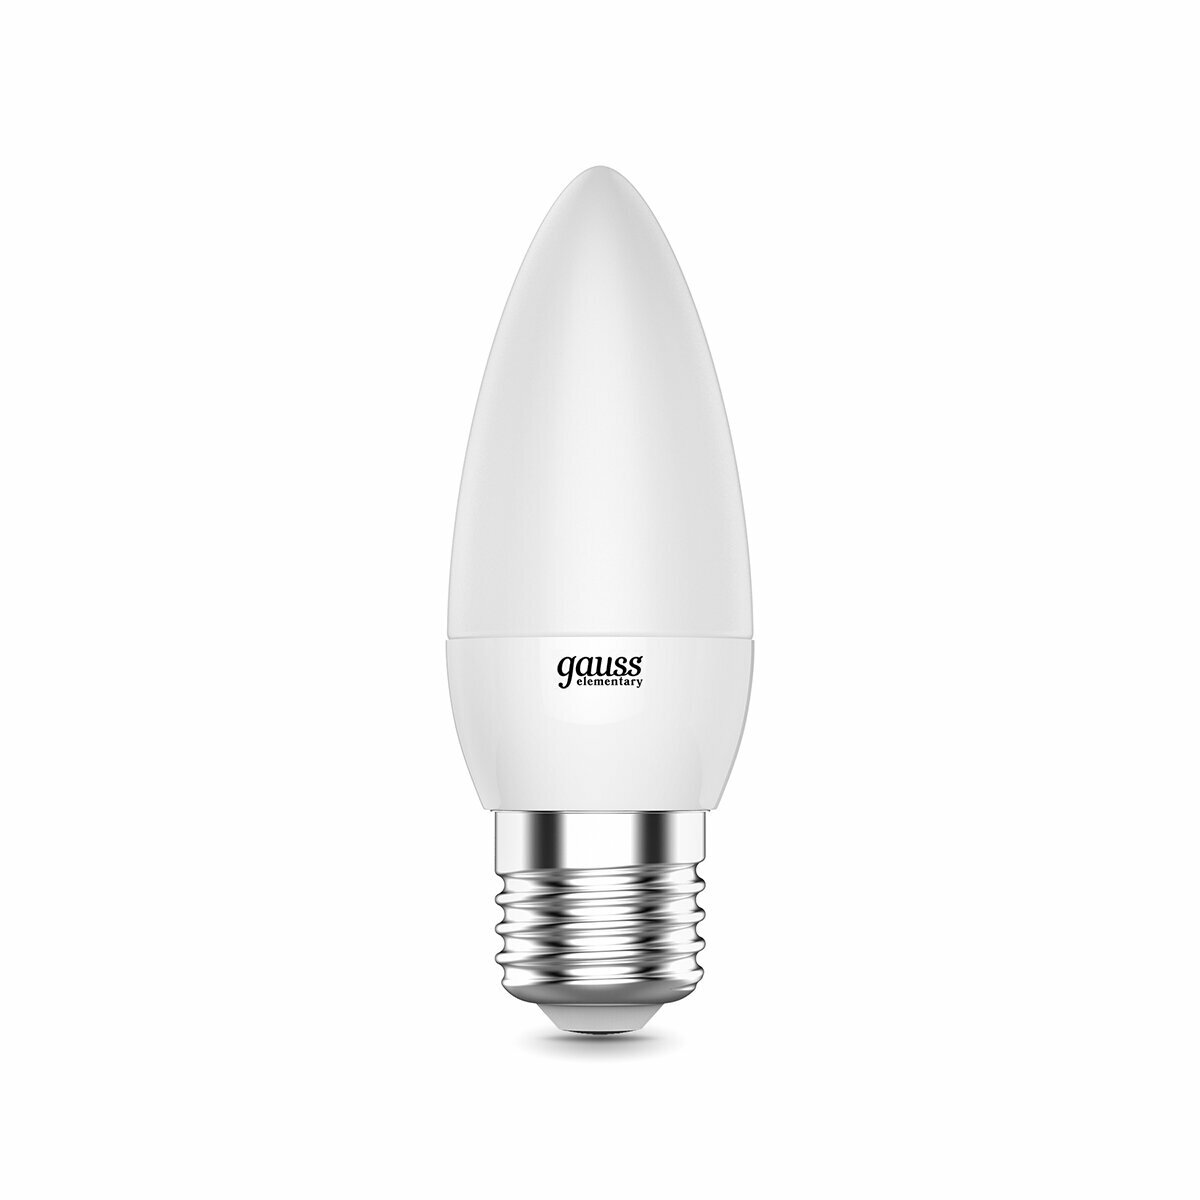 Лампа светодиодная LED Gauss Elementary Свеча, E27, 8 Вт, 3000 K, теплый белый свет